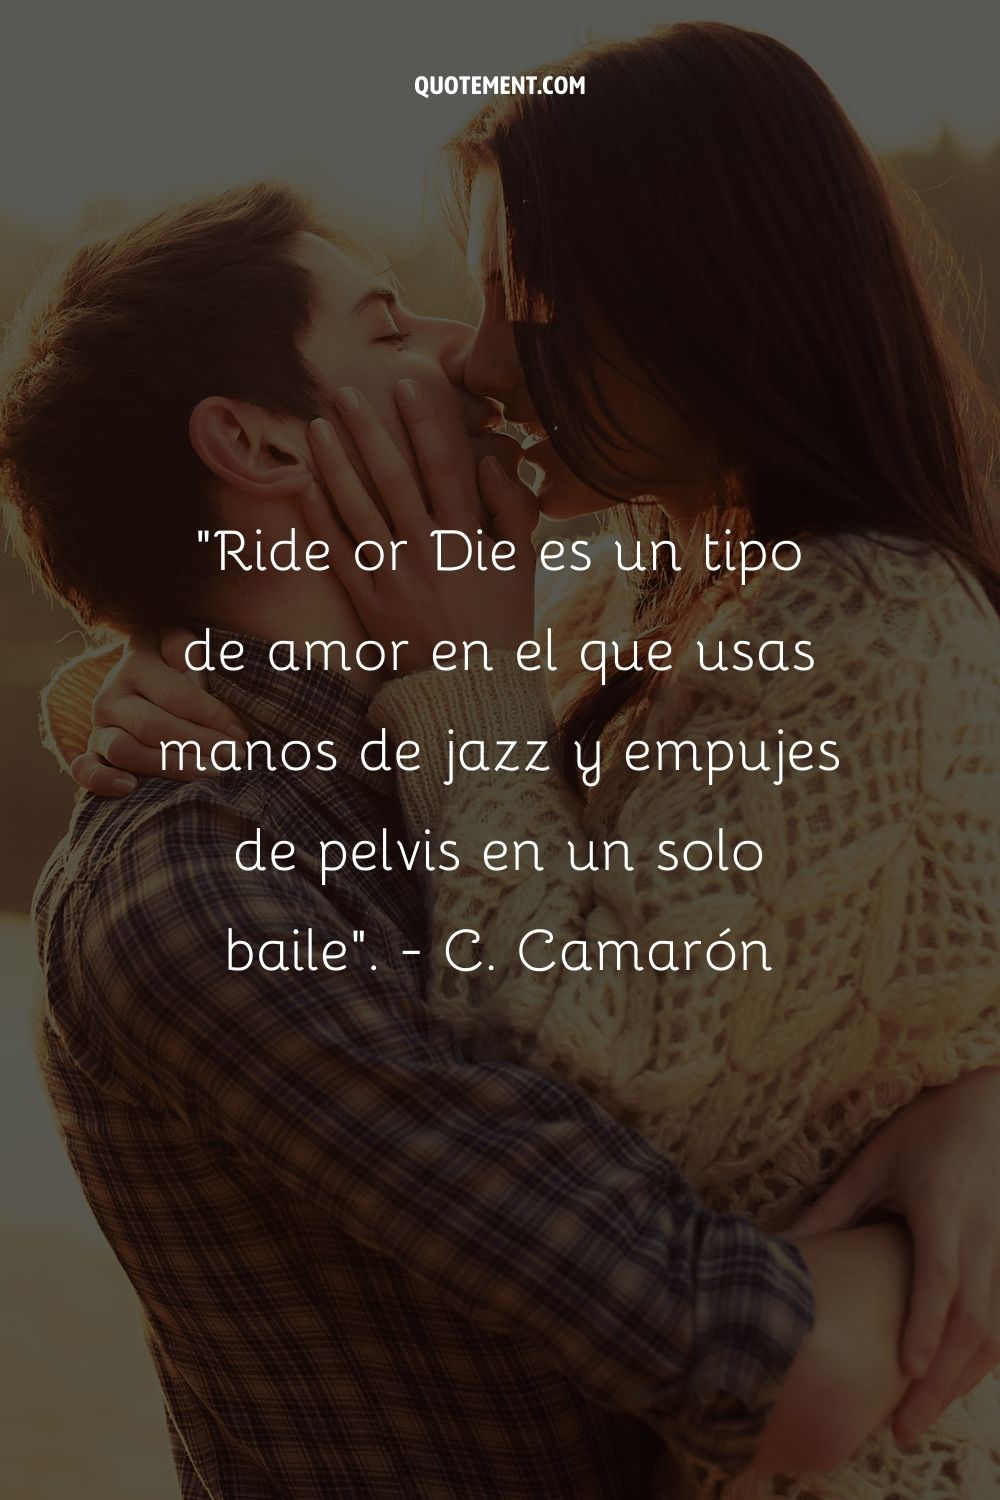 Ride or Die es un tipo de amor en el que se utilizan manos de jazz y empujes de pelvis en un mismo baile. - C. Camarón